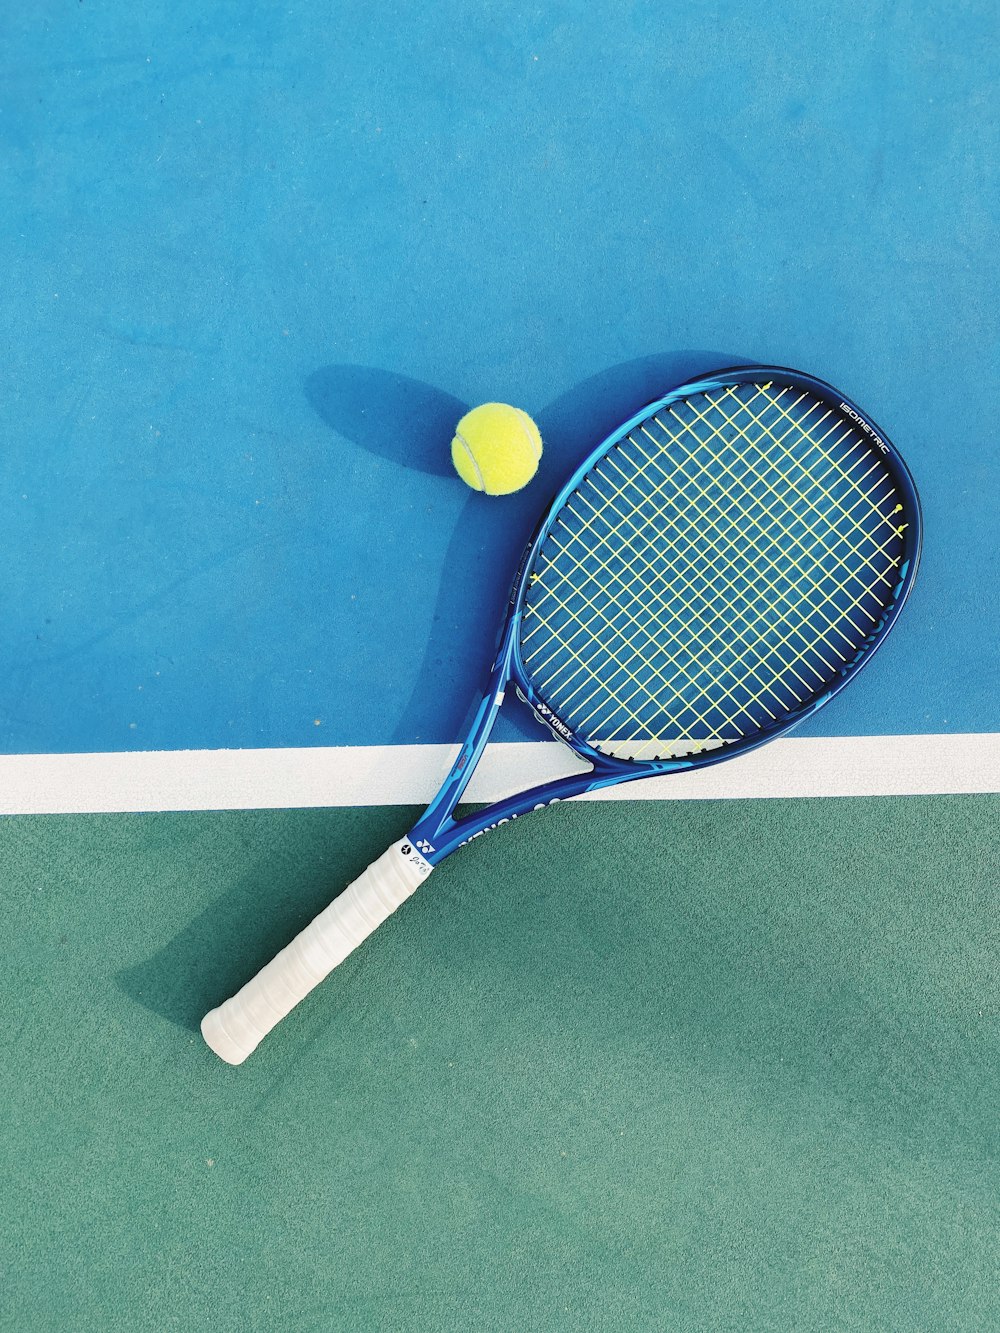 raqueta de tenis blanca y azul